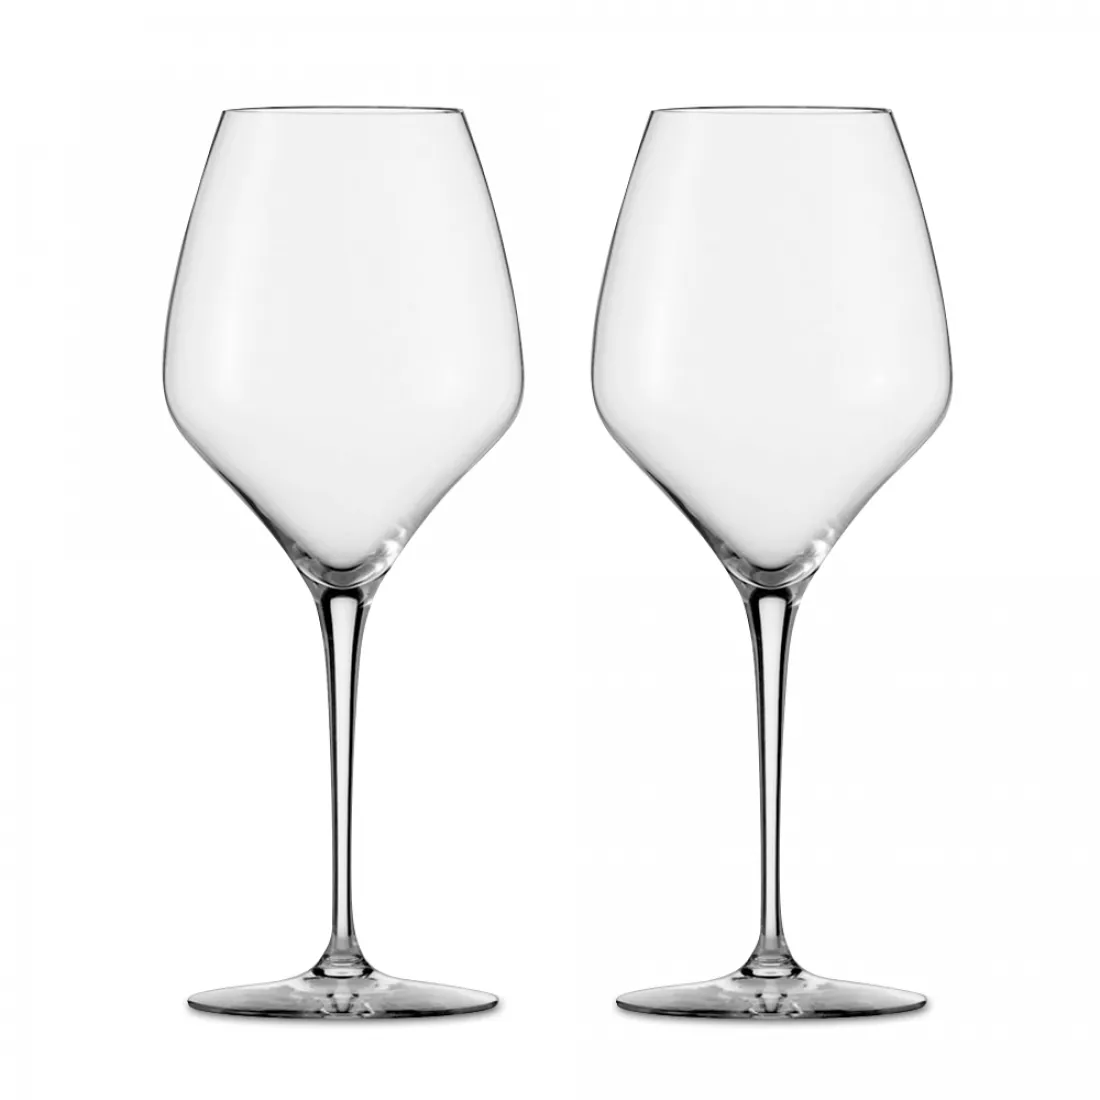 ZWIESEL GLAS Набор бокалов для белого вина CHARDONNAY, ручная работа, объем 525 мл, 2 шт., серия Alloro